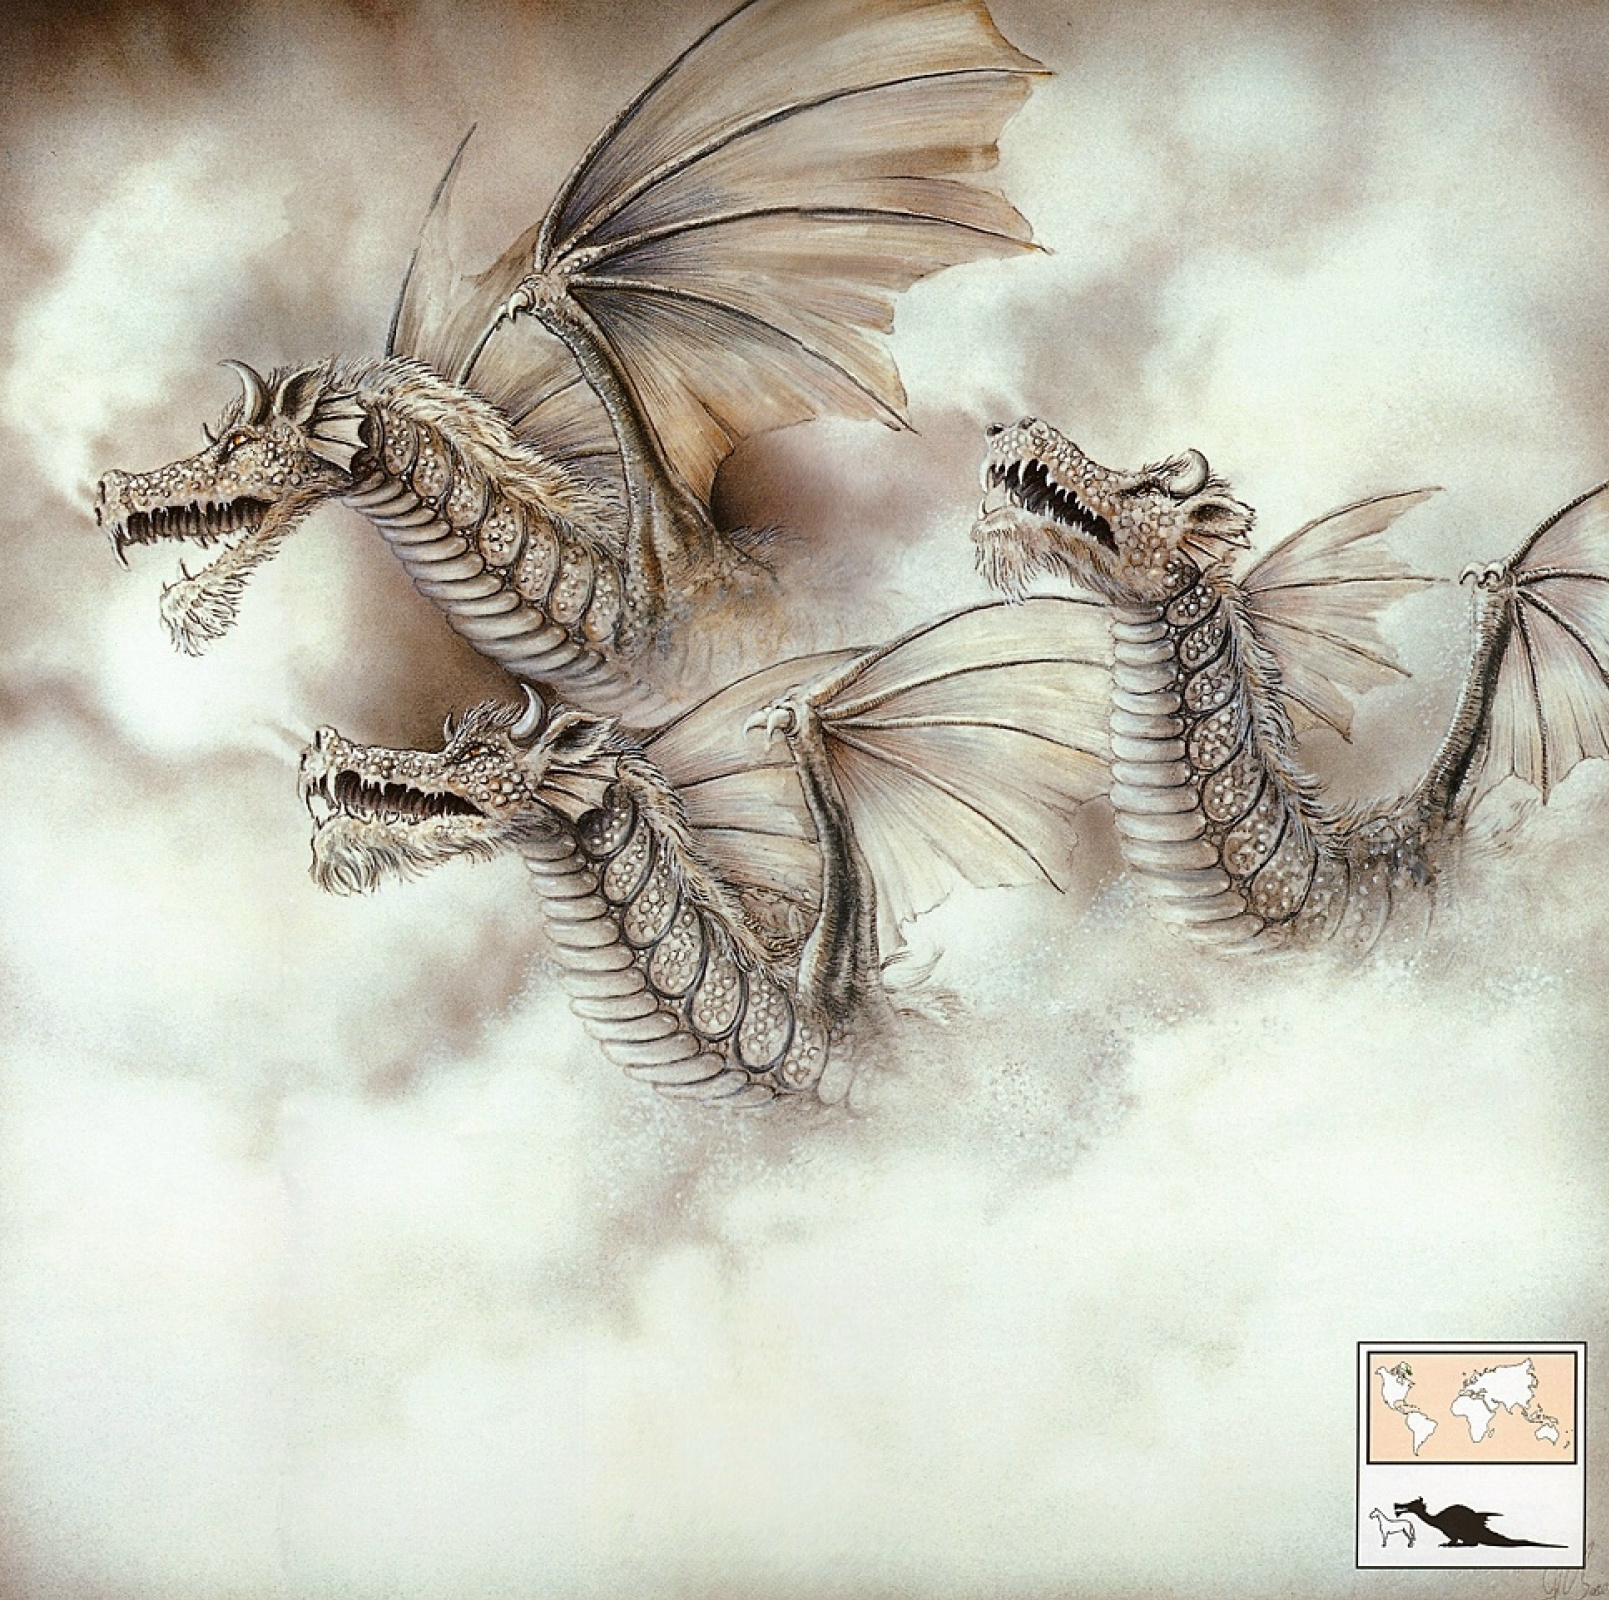 Базы Грэм - Большой снежный дракон: Описание произведения | Артхив